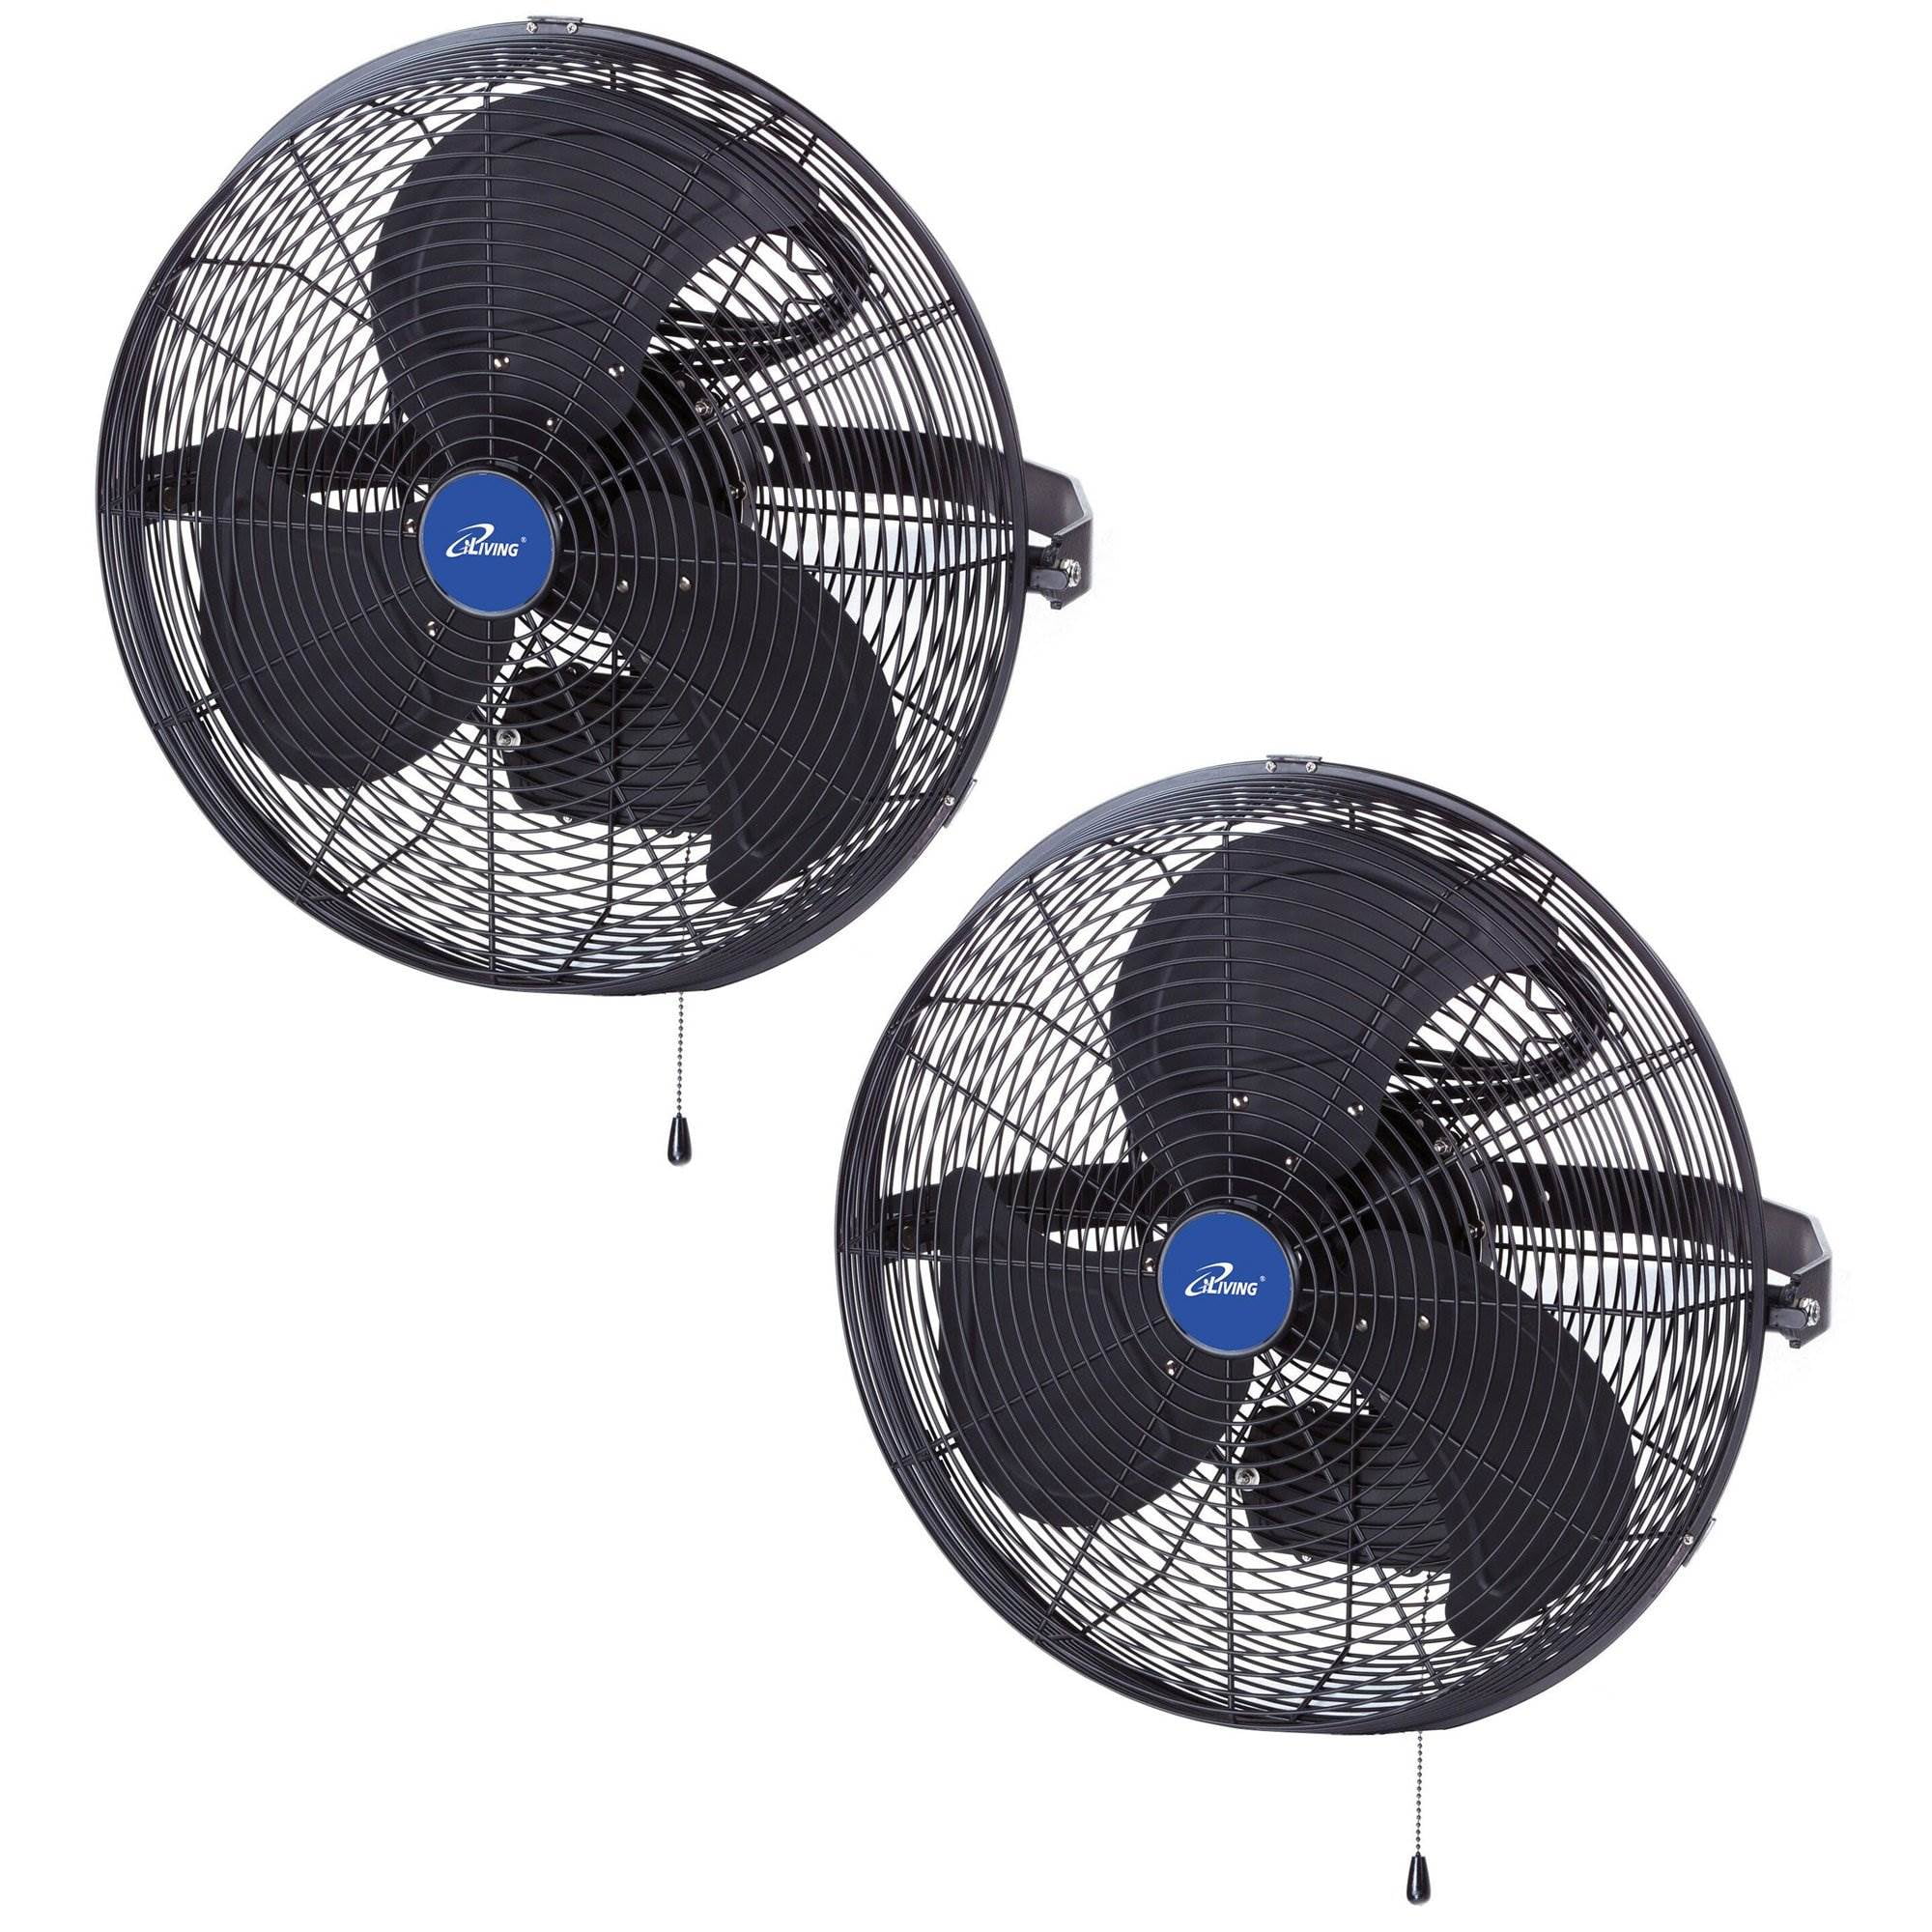 Adjustable Outdoor Waterproof Fan, Outdoor Wall Mounted Patio Fans